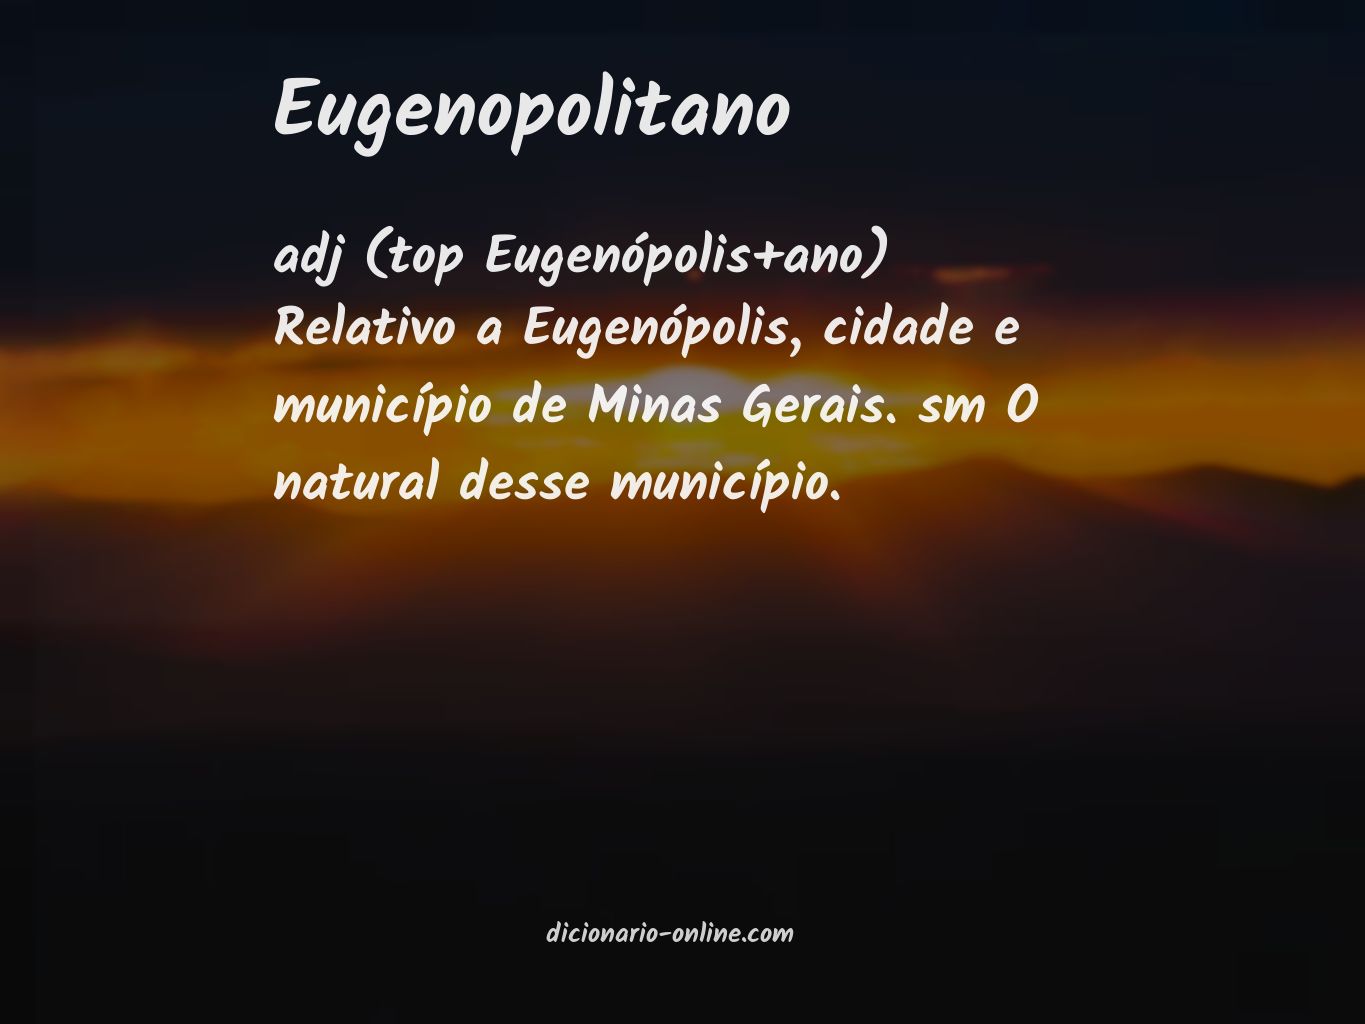 Significado de eugenopolitano